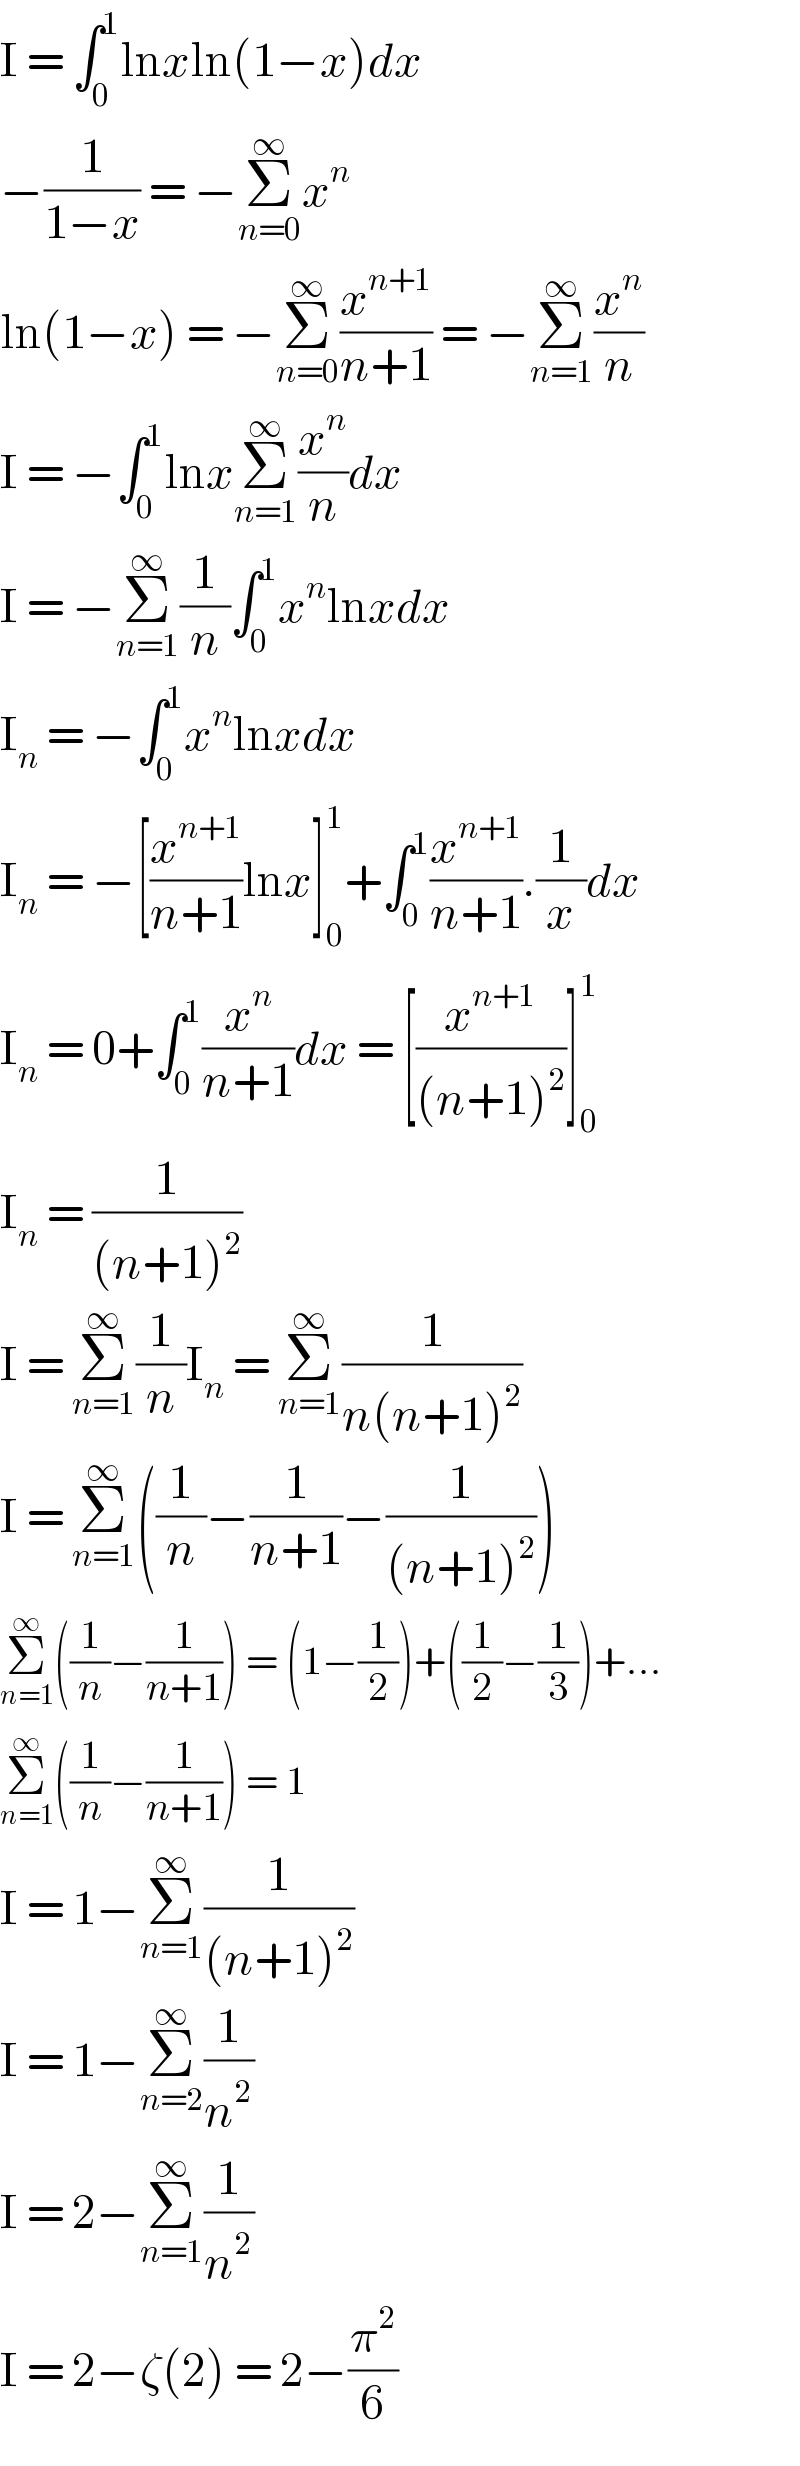 I = ∫_0 ^1 lnxln(1−x)dx  −(1/(1−x)) = −Σ_(n=0) ^∞ x^n   ln(1−x) = −Σ_(n=0) ^∞ (x^(n+1) /(n+1)) = −Σ_(n=1) ^∞ (x^n /n)  I = −∫_0 ^1 lnxΣ_(n=1) ^∞ (x^n /n)dx  I = −Σ_(n=1) ^∞ (1/n)∫_0 ^1 x^n lnxdx  I_n  = −∫_0 ^1 x^n lnxdx  I_n  = −[(x^(n+1) /(n+1))lnx]_0 ^1 +∫_0 ^1 (x^(n+1) /(n+1)).(1/x)dx  I_n  = 0+∫_0 ^1 (x^n /(n+1))dx = [(x^(n+1) /((n+1)^2 ))]_0 ^1   I_n  = (1/((n+1)^2 ))  I = Σ_(n=1) ^∞ (1/n)I_n  = Σ_(n=1) ^∞ (1/(n(n+1)^2 ))  I = Σ_(n=1) ^∞ ((1/n)−(1/(n+1))−(1/((n+1)^2 )))  Σ_(n=1) ^∞ ((1/n)−(1/(n+1))) = (1−(1/2))+((1/2)−(1/3))+...  Σ_(n=1) ^∞ ((1/n)−(1/(n+1))) = 1  I = 1−Σ_(n=1) ^∞ (1/((n+1)^2 ))  I = 1−Σ_(n=2) ^∞ (1/n^2 )  I = 2−Σ_(n=1) ^∞ (1/n^2 )  I = 2−ζ(2) = 2−(π^2 /6)  